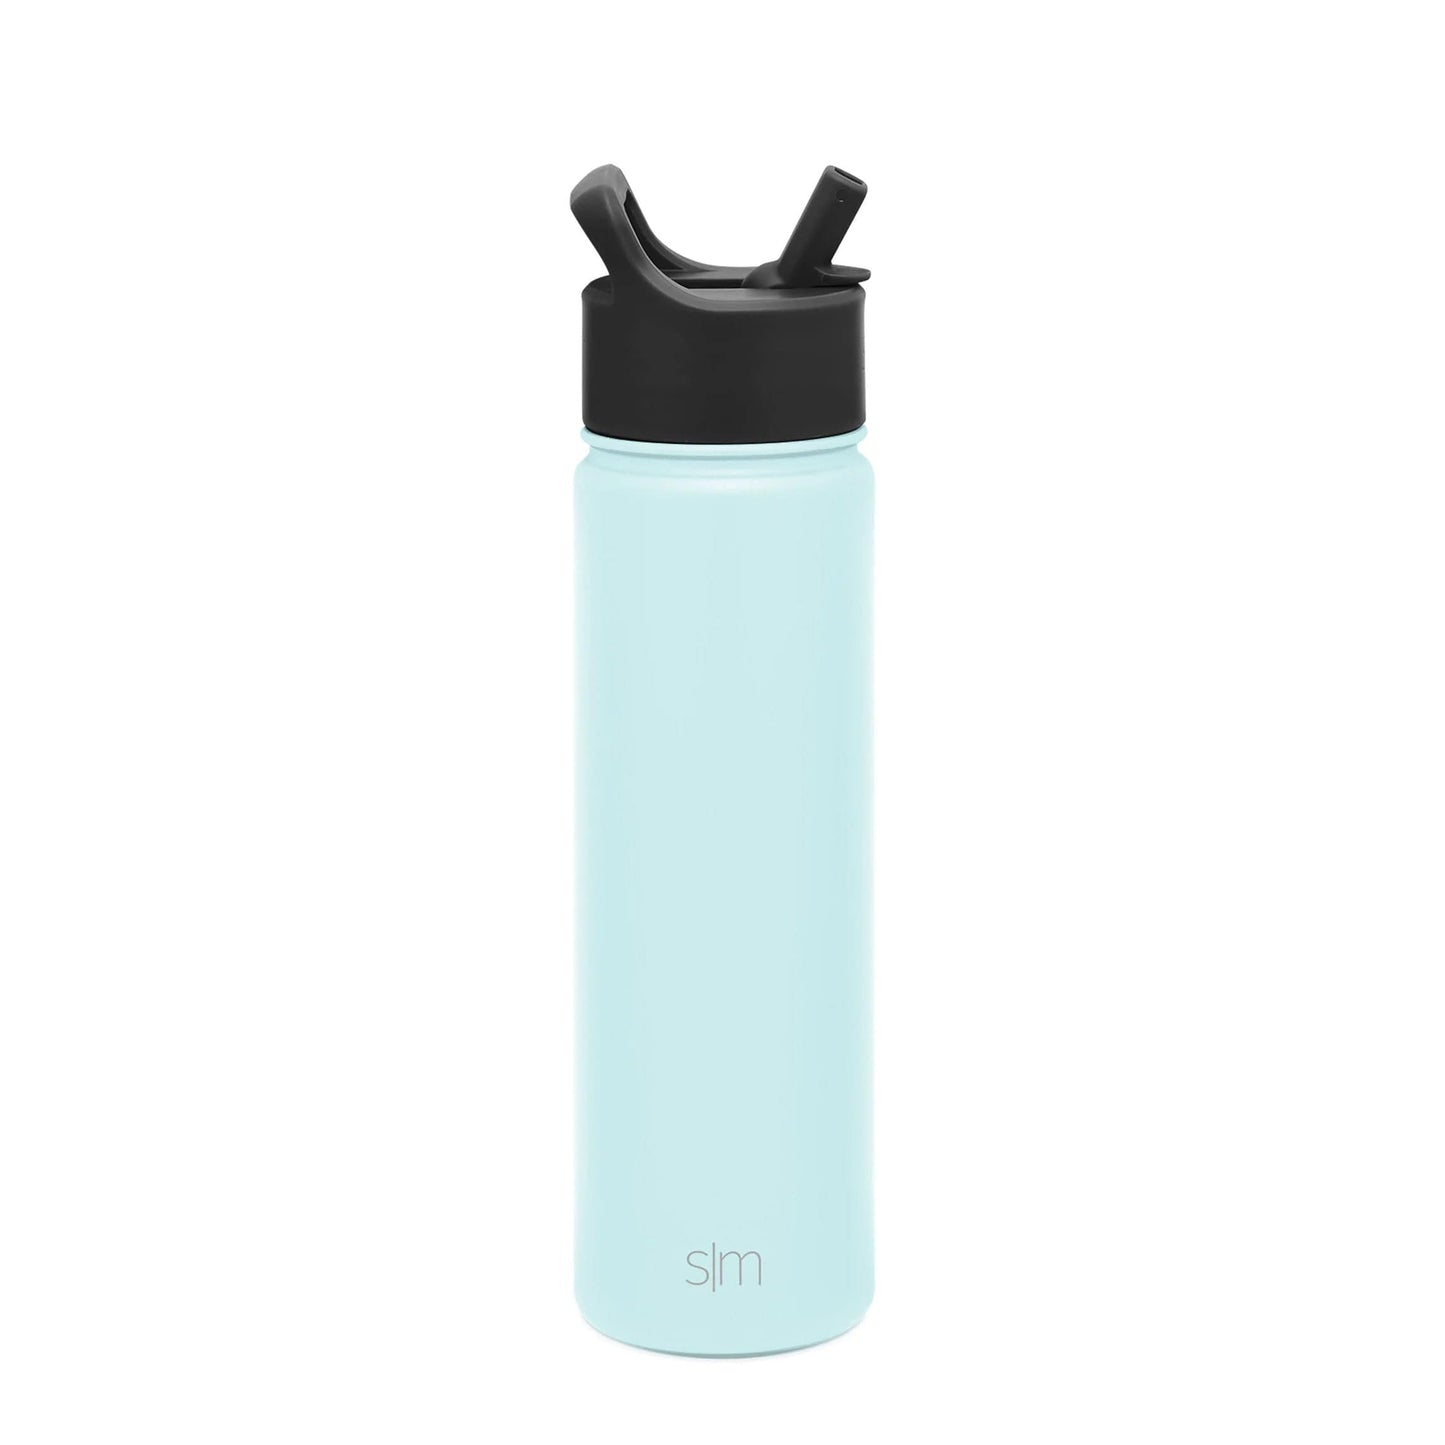 Seaside Custom Summit Water Bottle With Straw Lid - 22oz